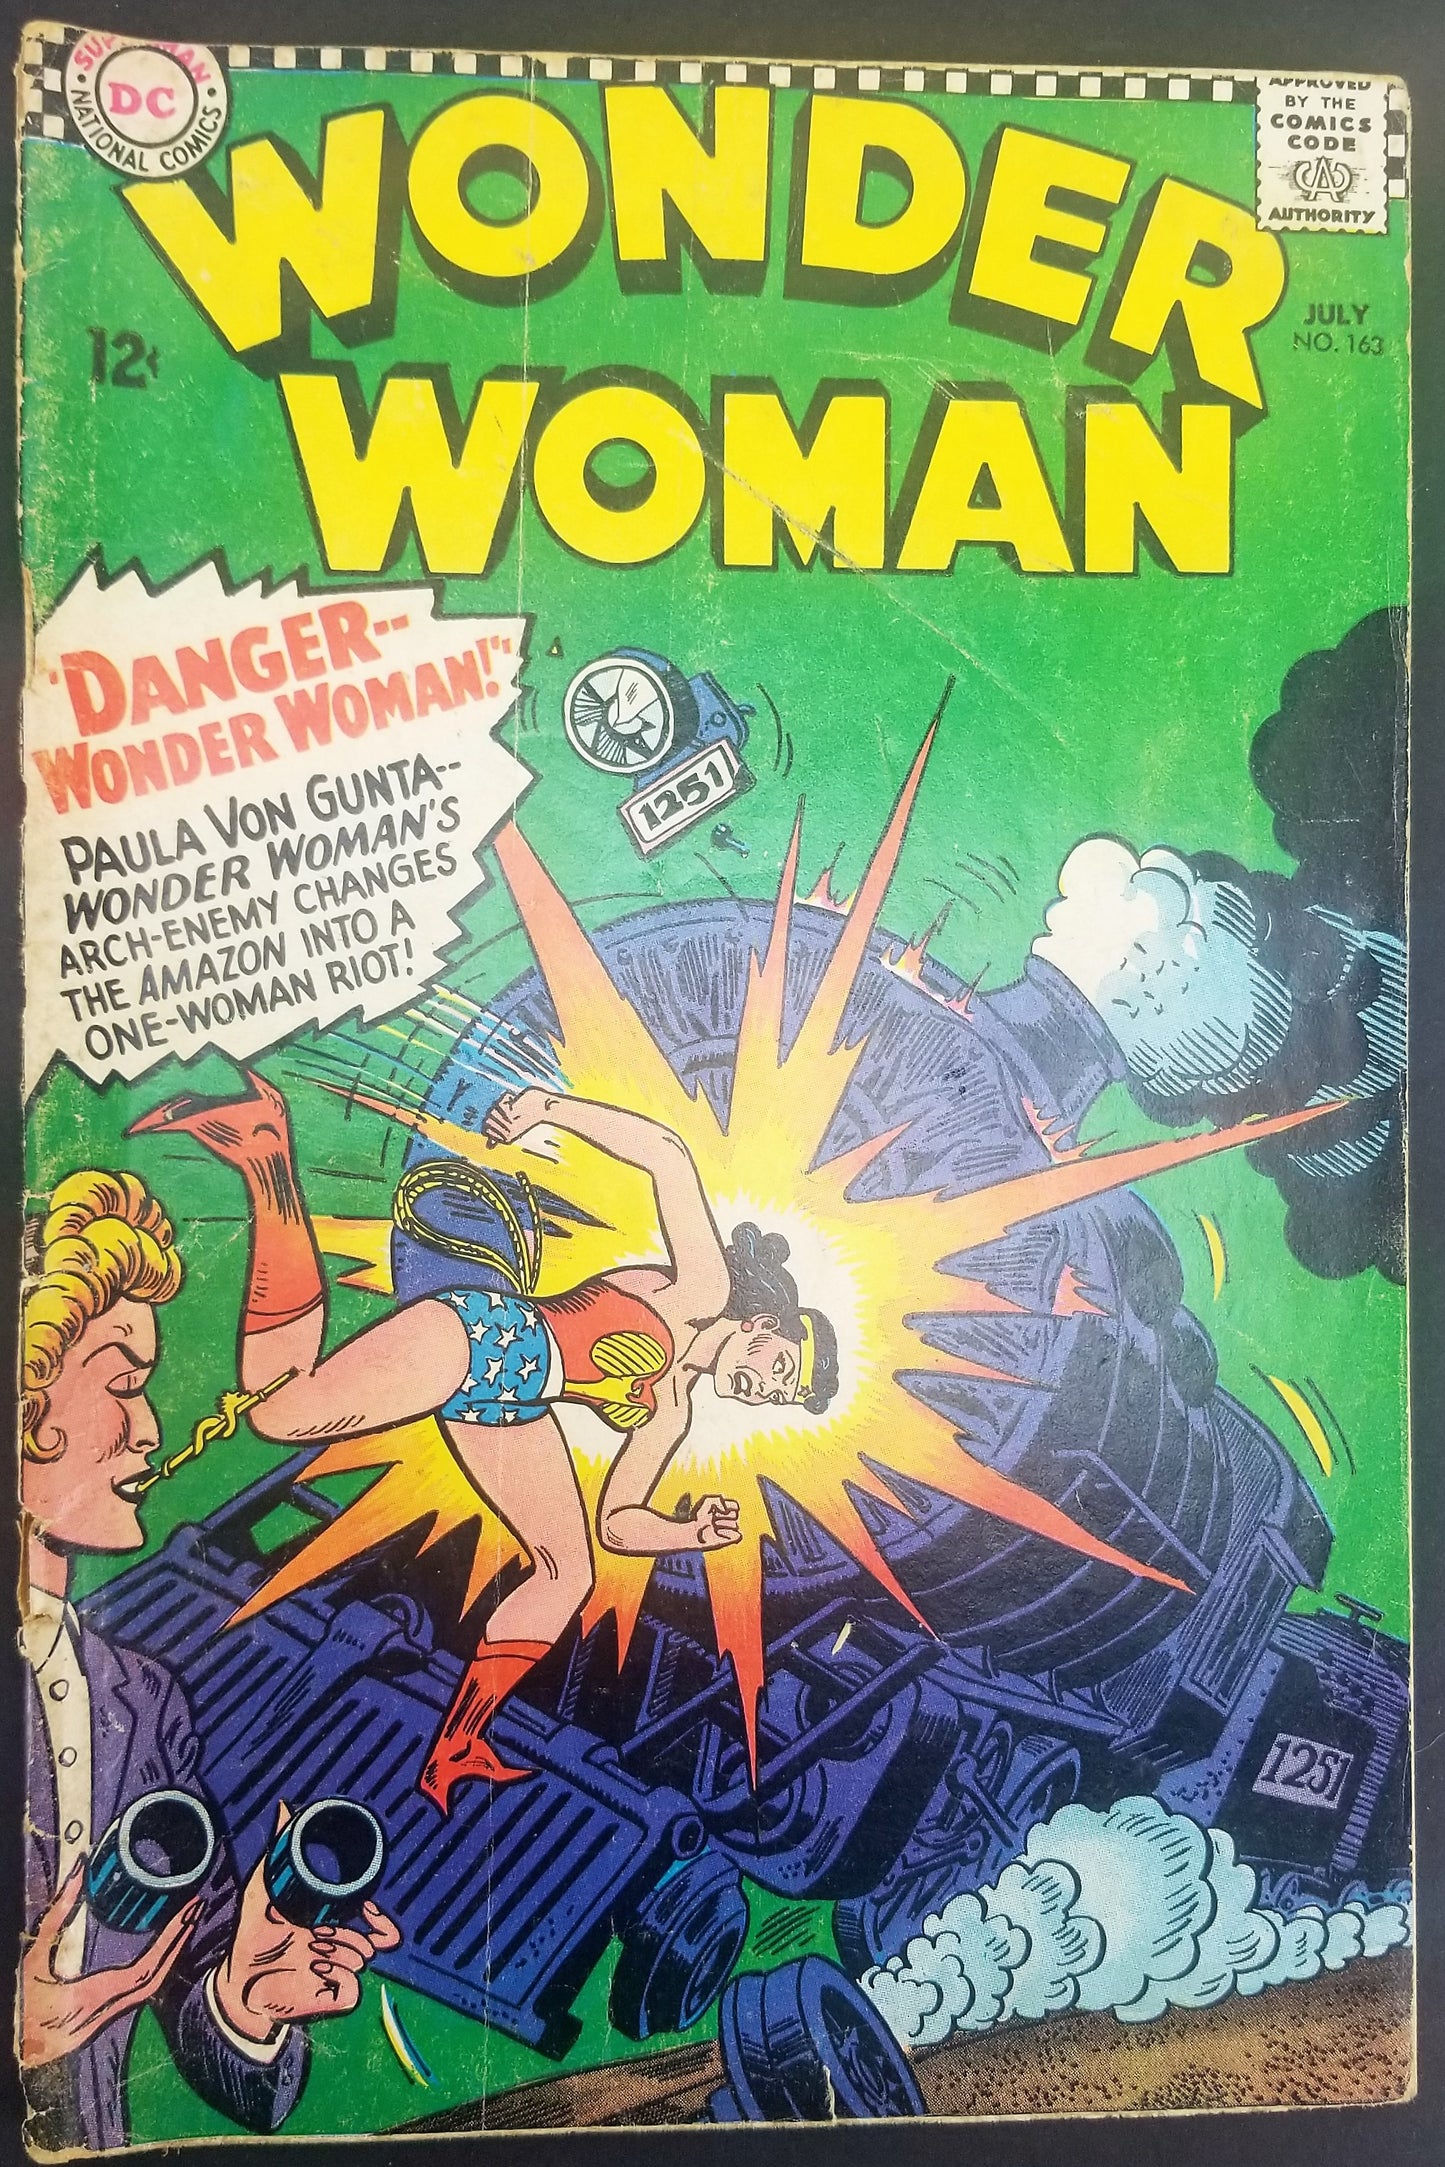 Wonder Woman No. 163, "Danger--Wonder Woman!" DC Comics, July 1966